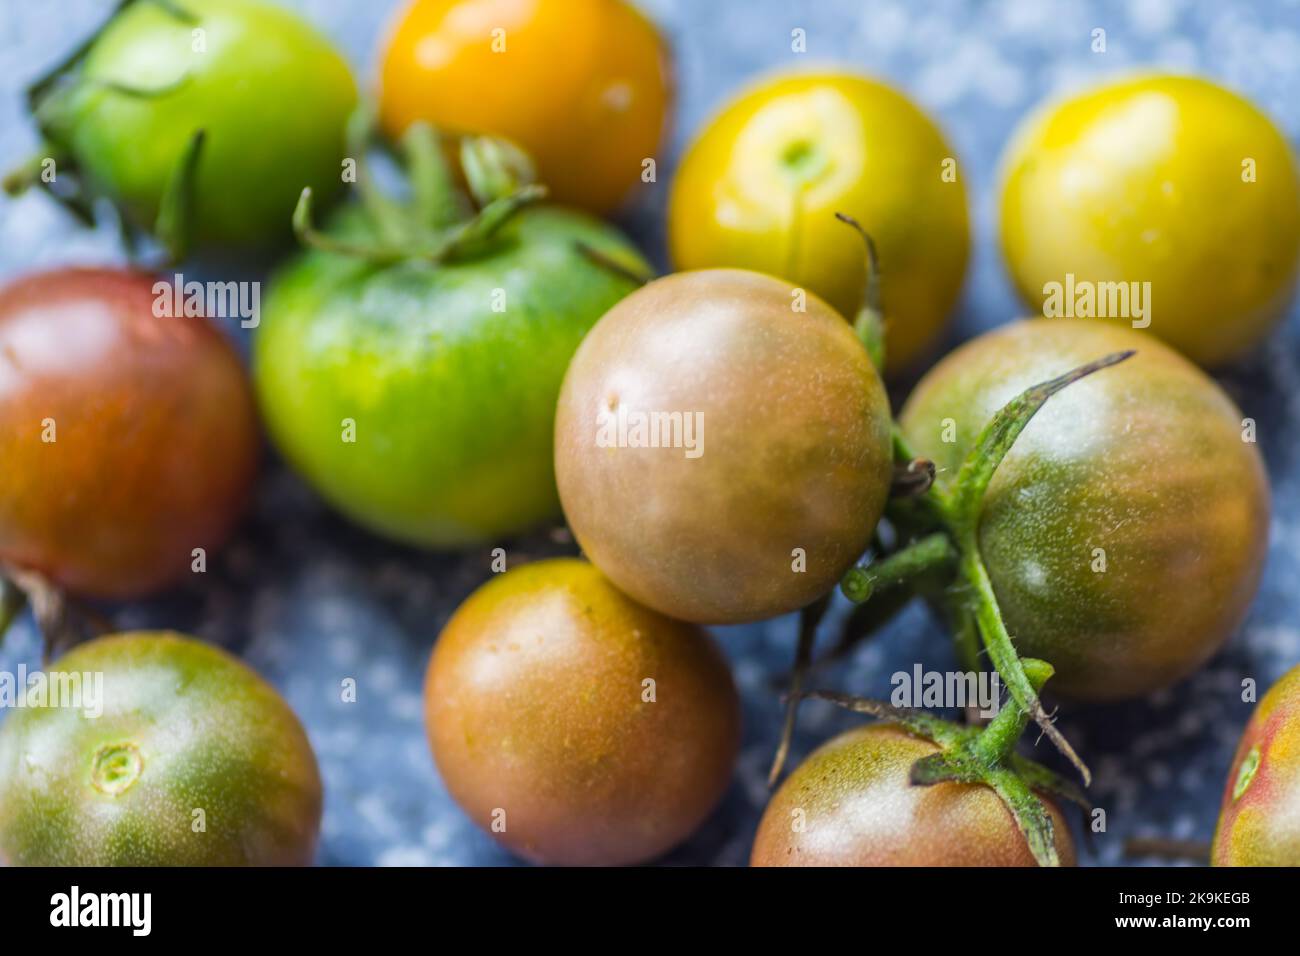 molti pomodori poco maturi con colori diversi nella vista di dettaglio Foto Stock